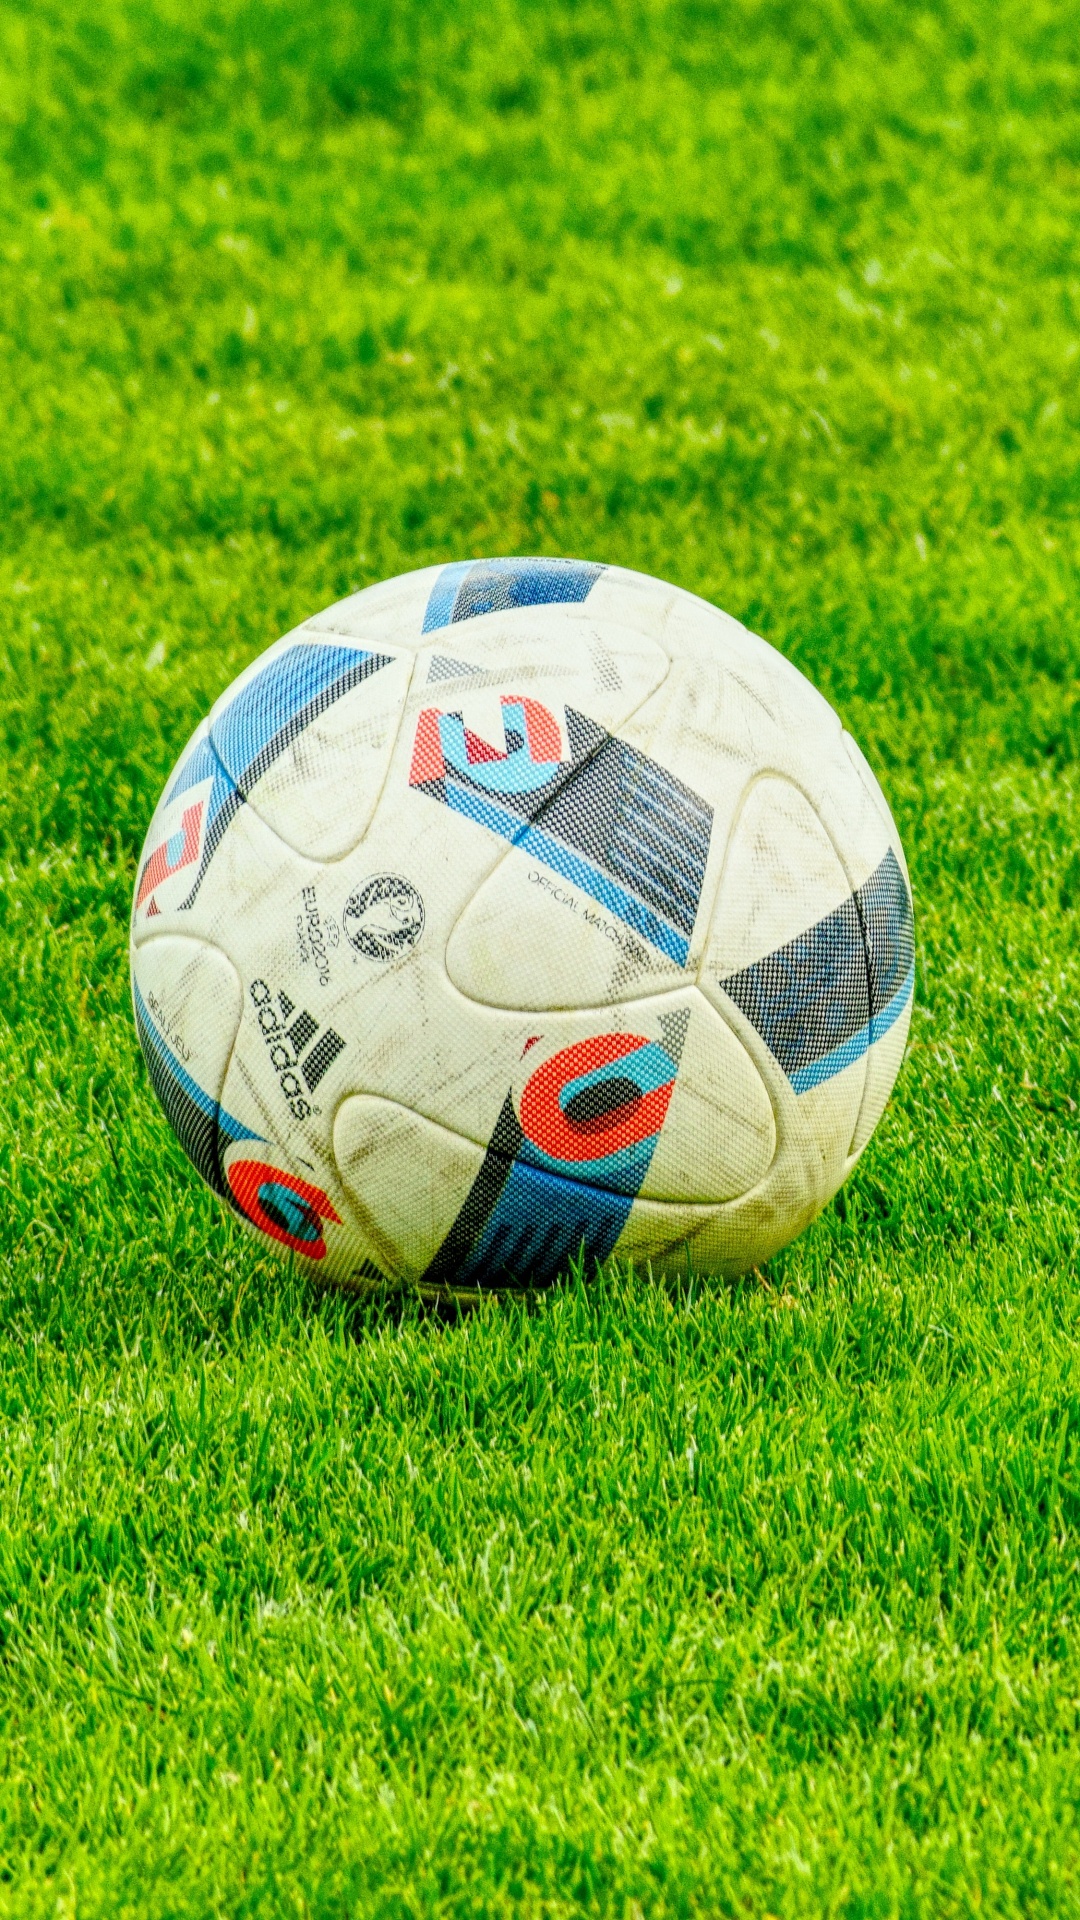 足球, 球, 草, 国际足球的规则, 气球 壁纸 1080x1920 允许